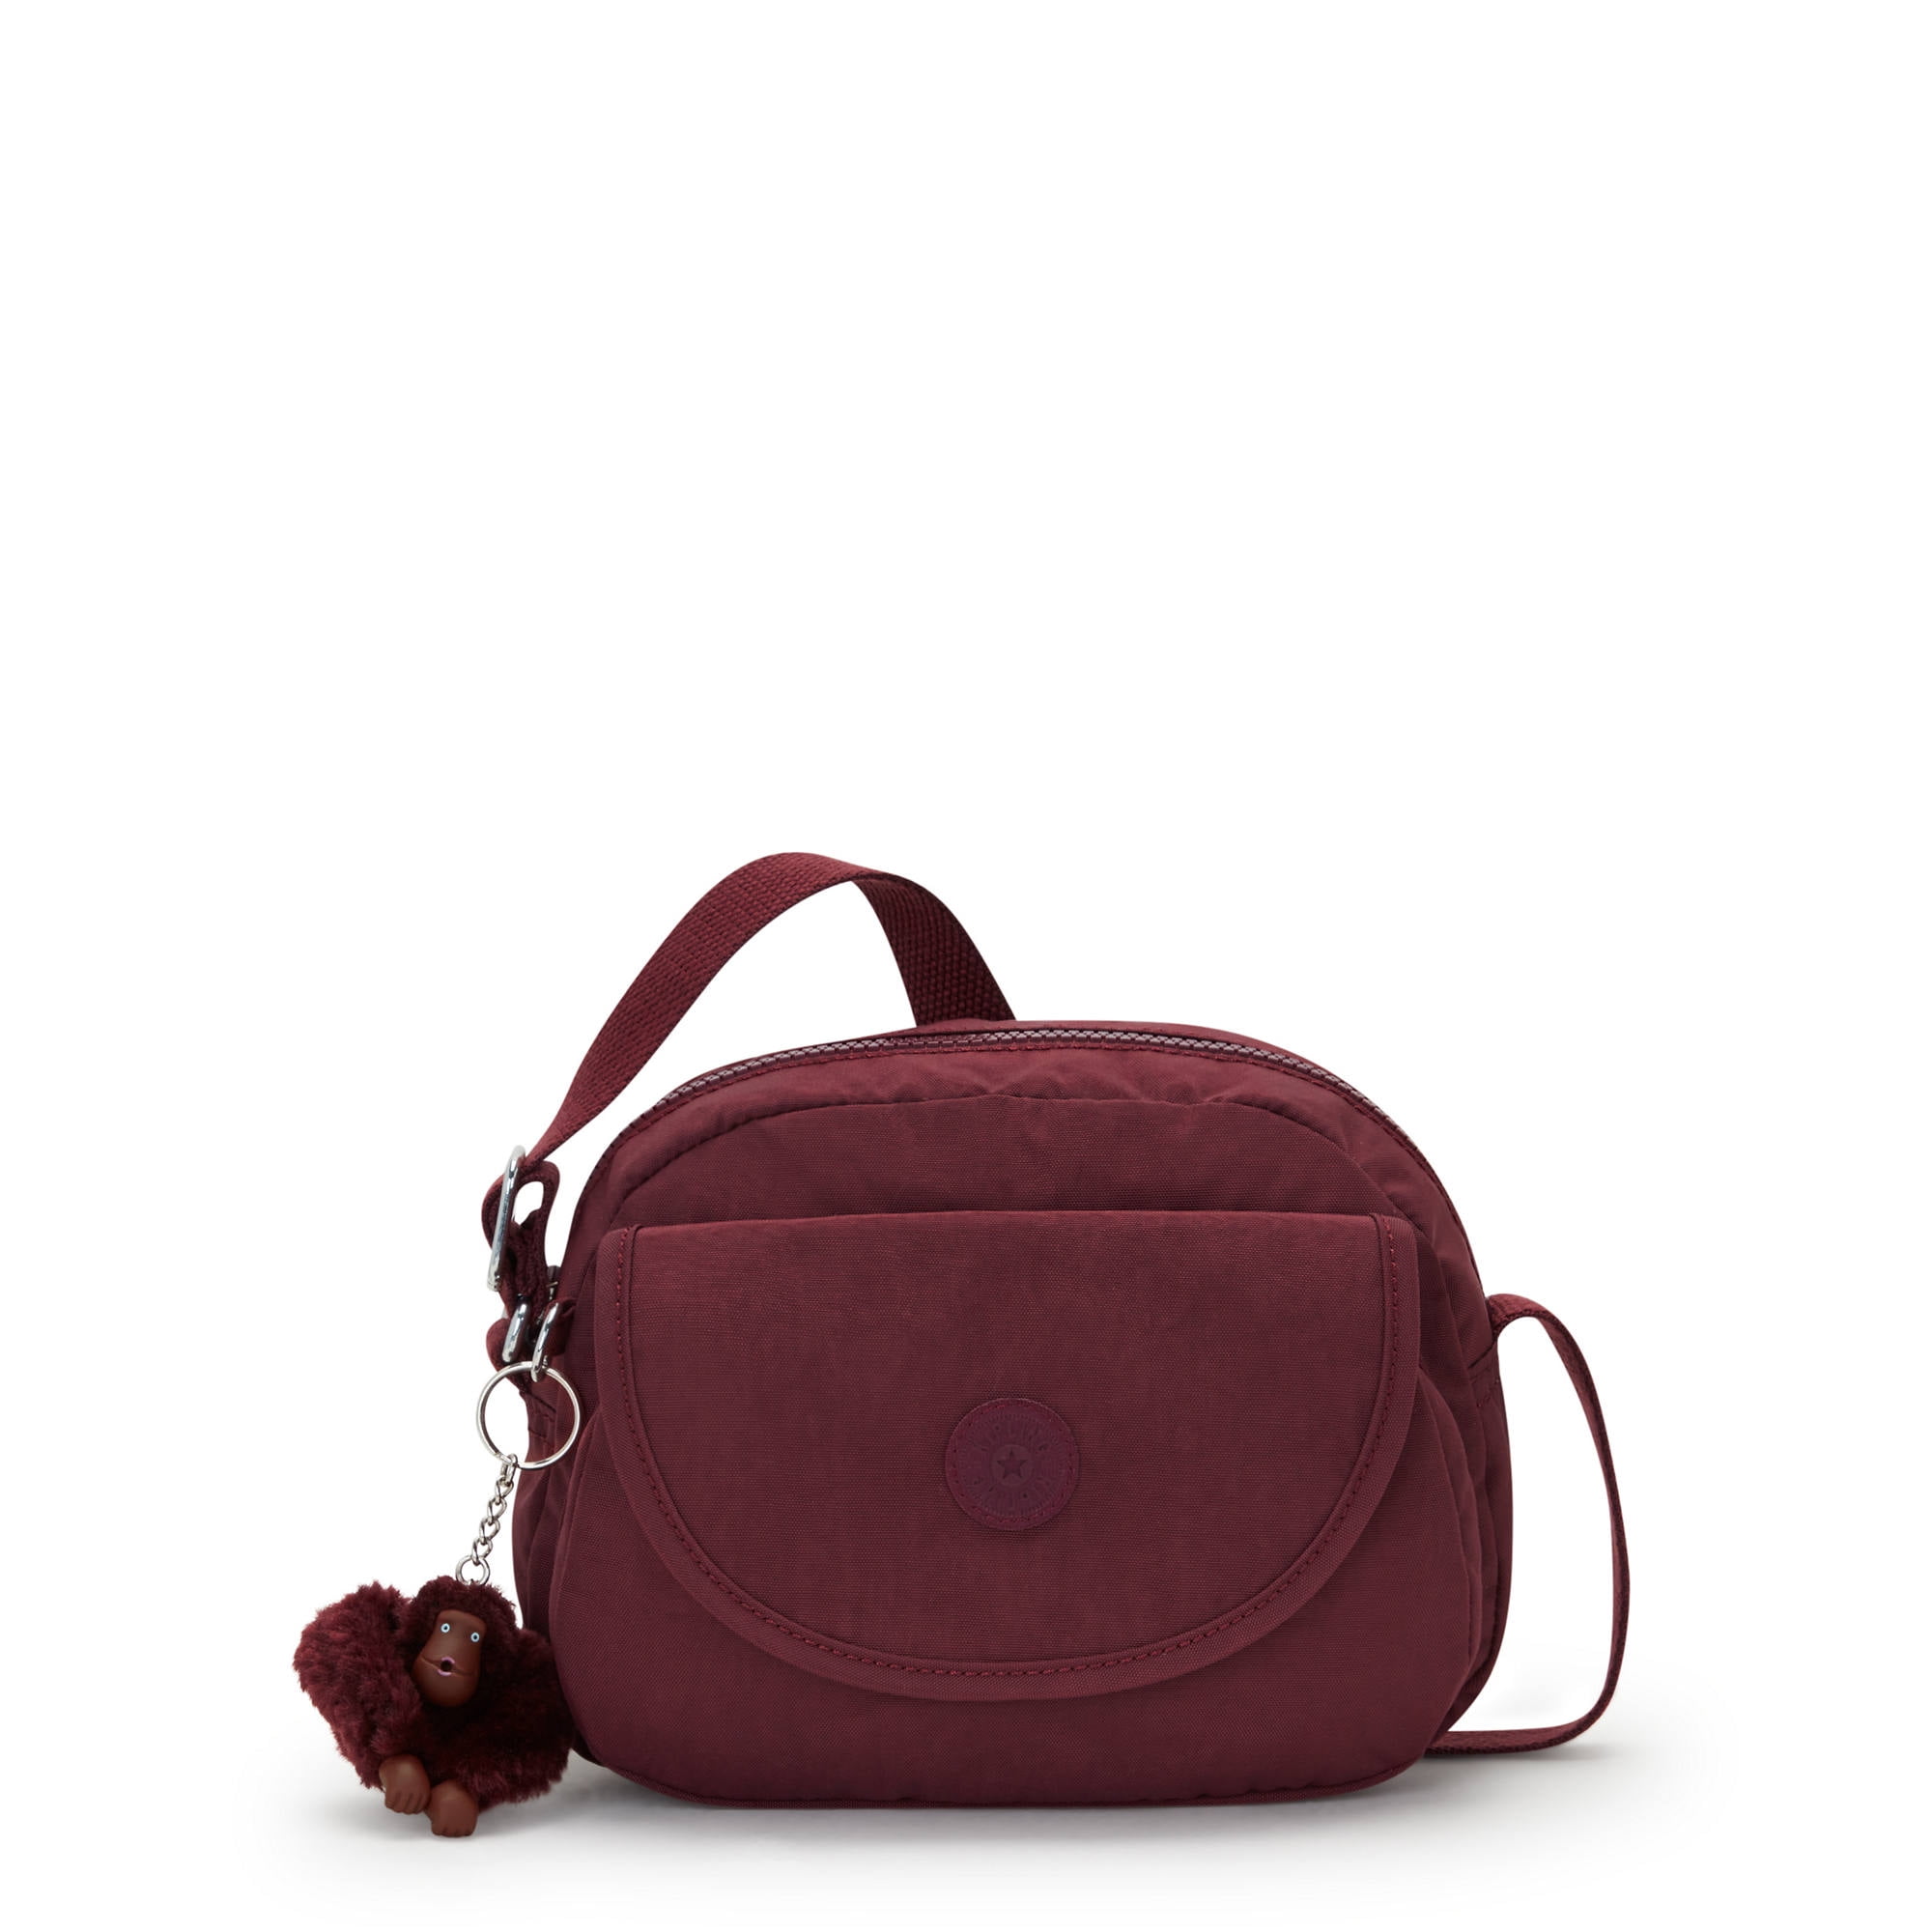 Kipling Women's Stelma Crossbody Handbag with Adjustable Strap ...